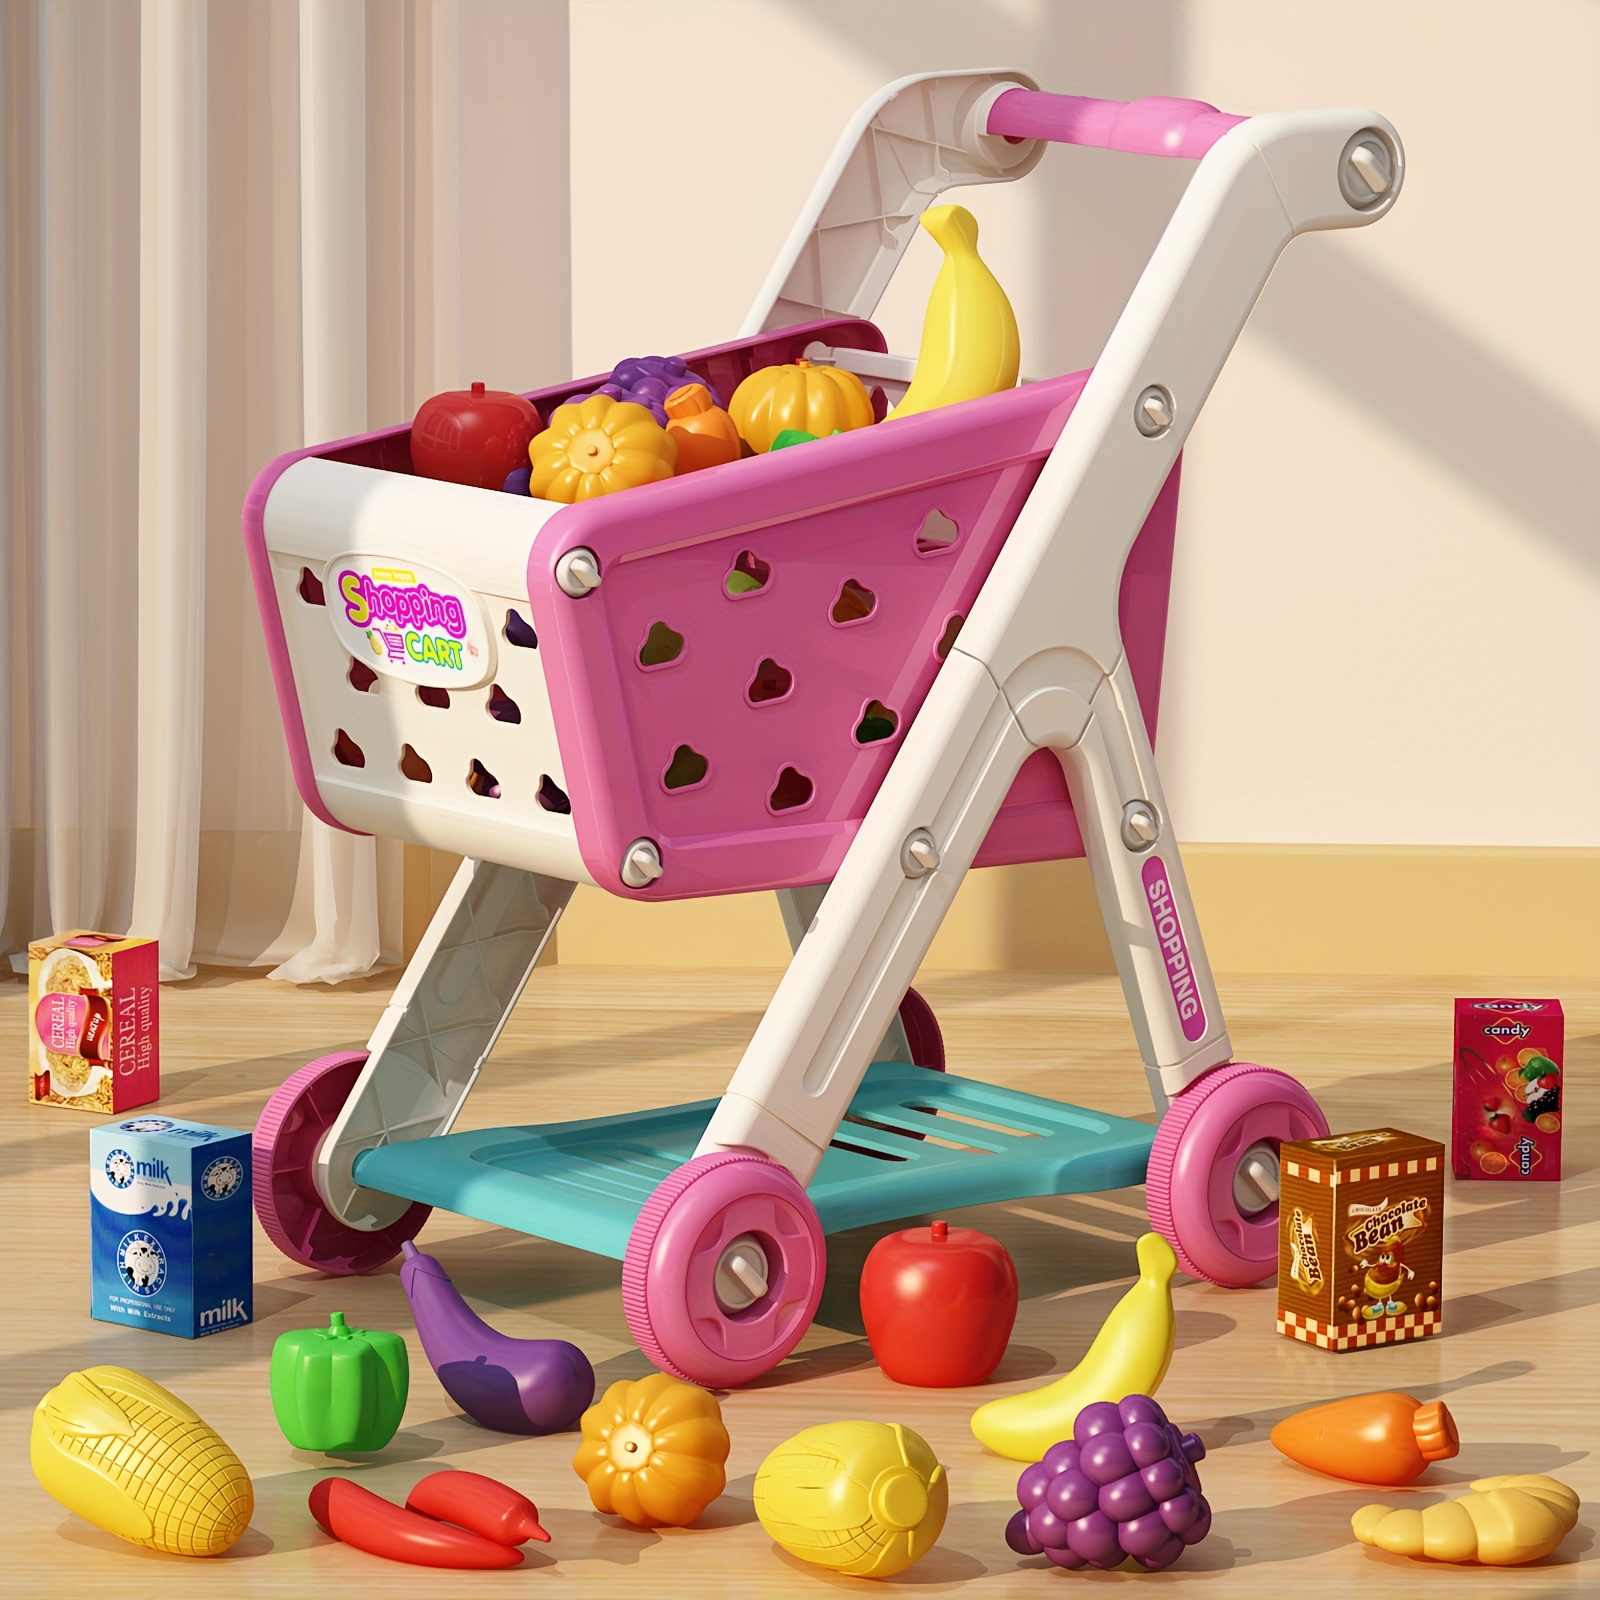 Panier d'épicerie pour enfants, mini chariot de supermarché